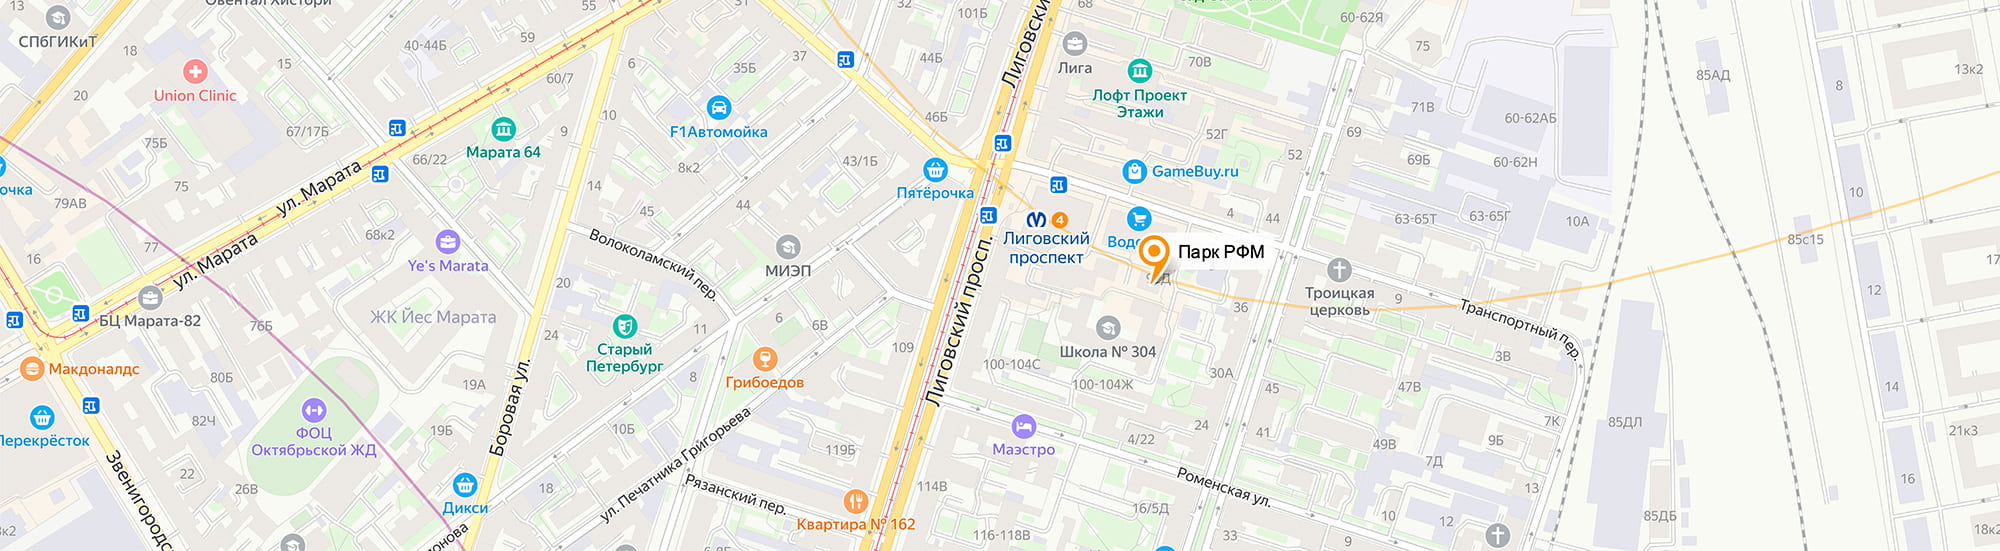 Офис на Яндекс.Картах